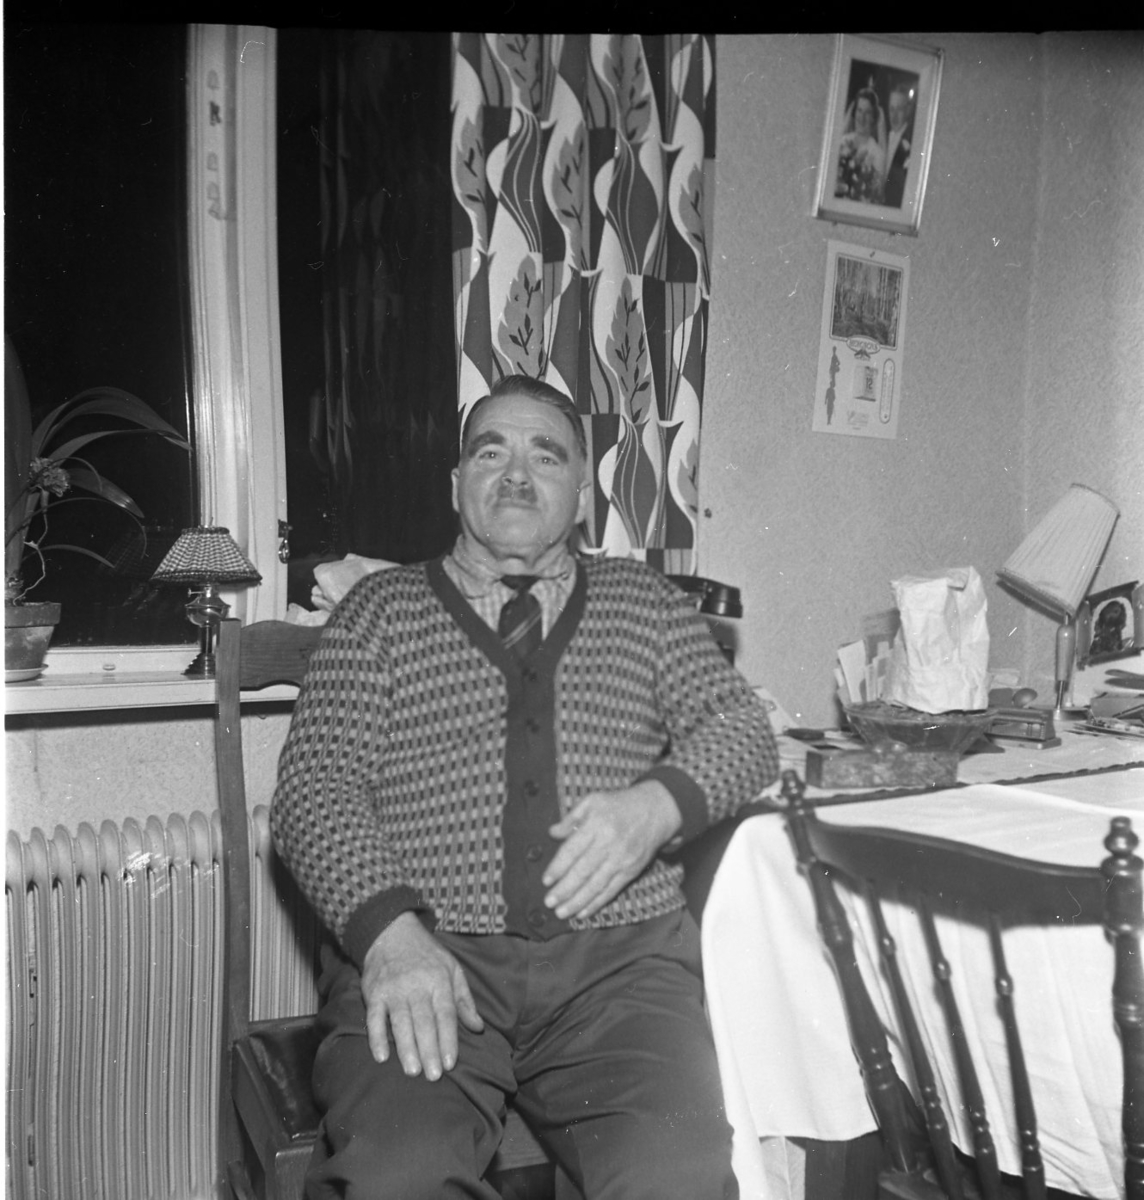 Porträtt av en äldre man som sitter på en stol vid ett bord med ljus duk, troligen på Sandviks gård. Han har mustasch, bär slips och en mönstrad stickad kofta. Han heter Gunnar Sääv.